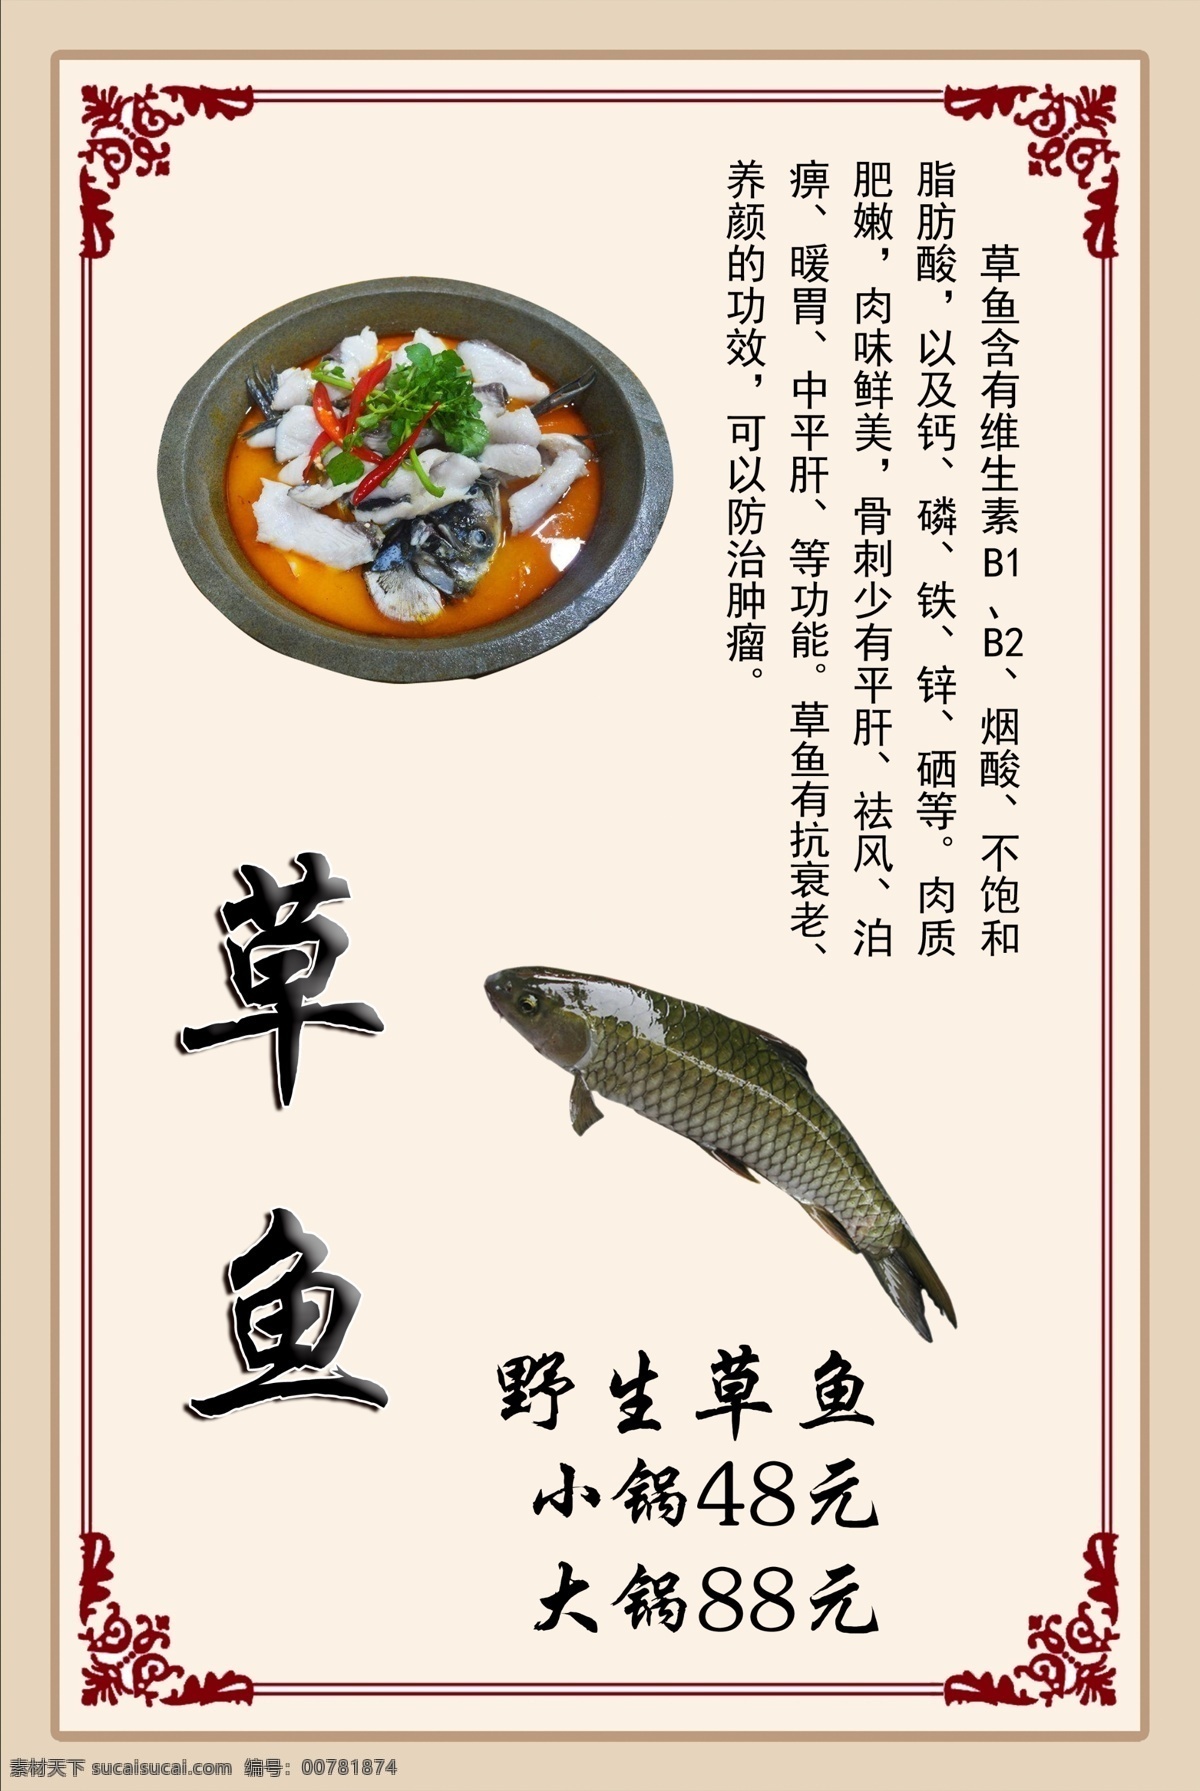 草鱼鱼锅 草鱼 鱼锅 石锅鱼 中国风 浅色 分层